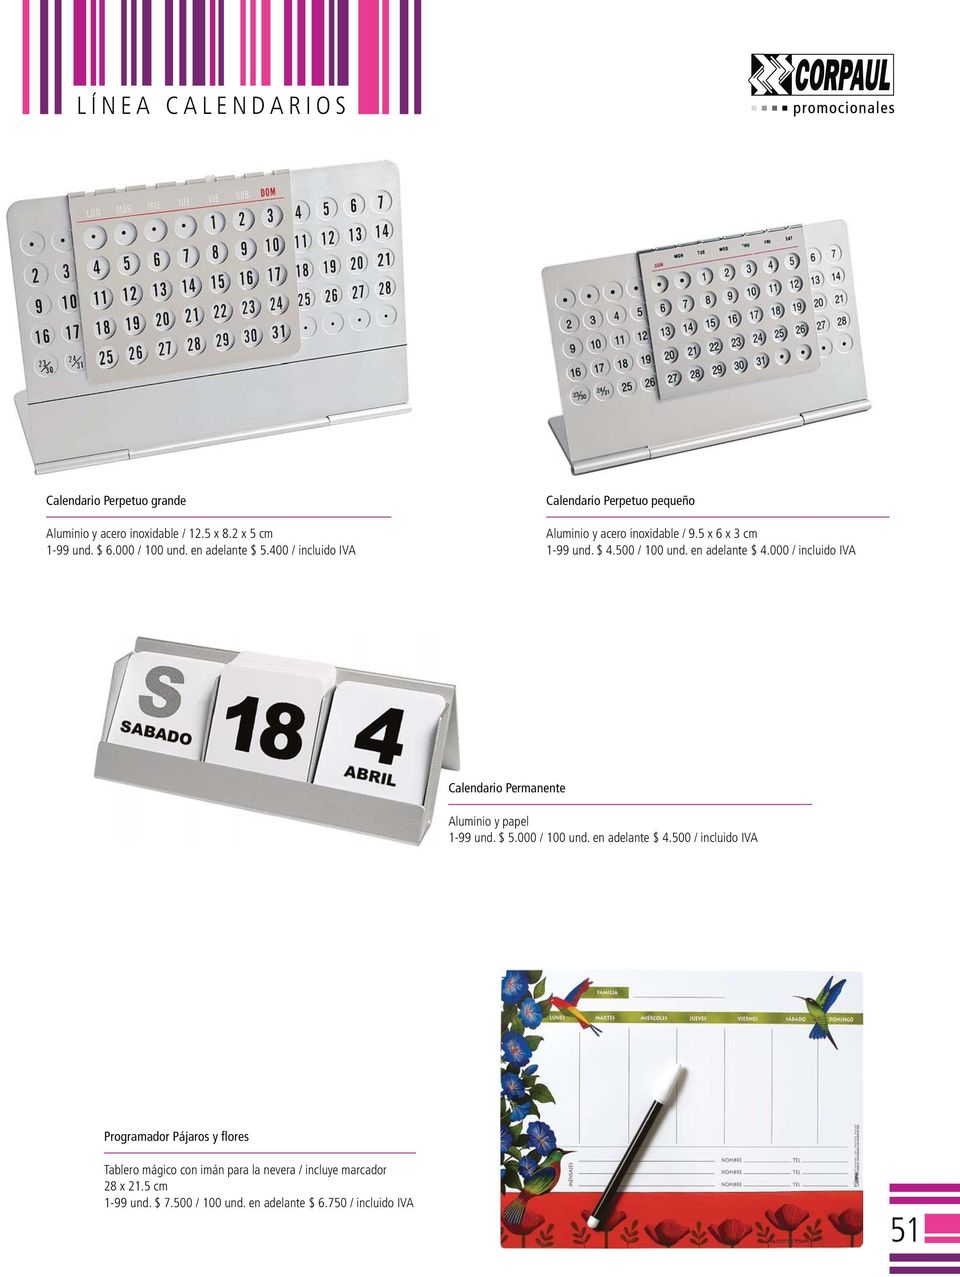 000 / incluido IVA Calendario Permanente Aluminio y papel 1-99 und. $ 5.000 / 100 und. en adelante $ 4.